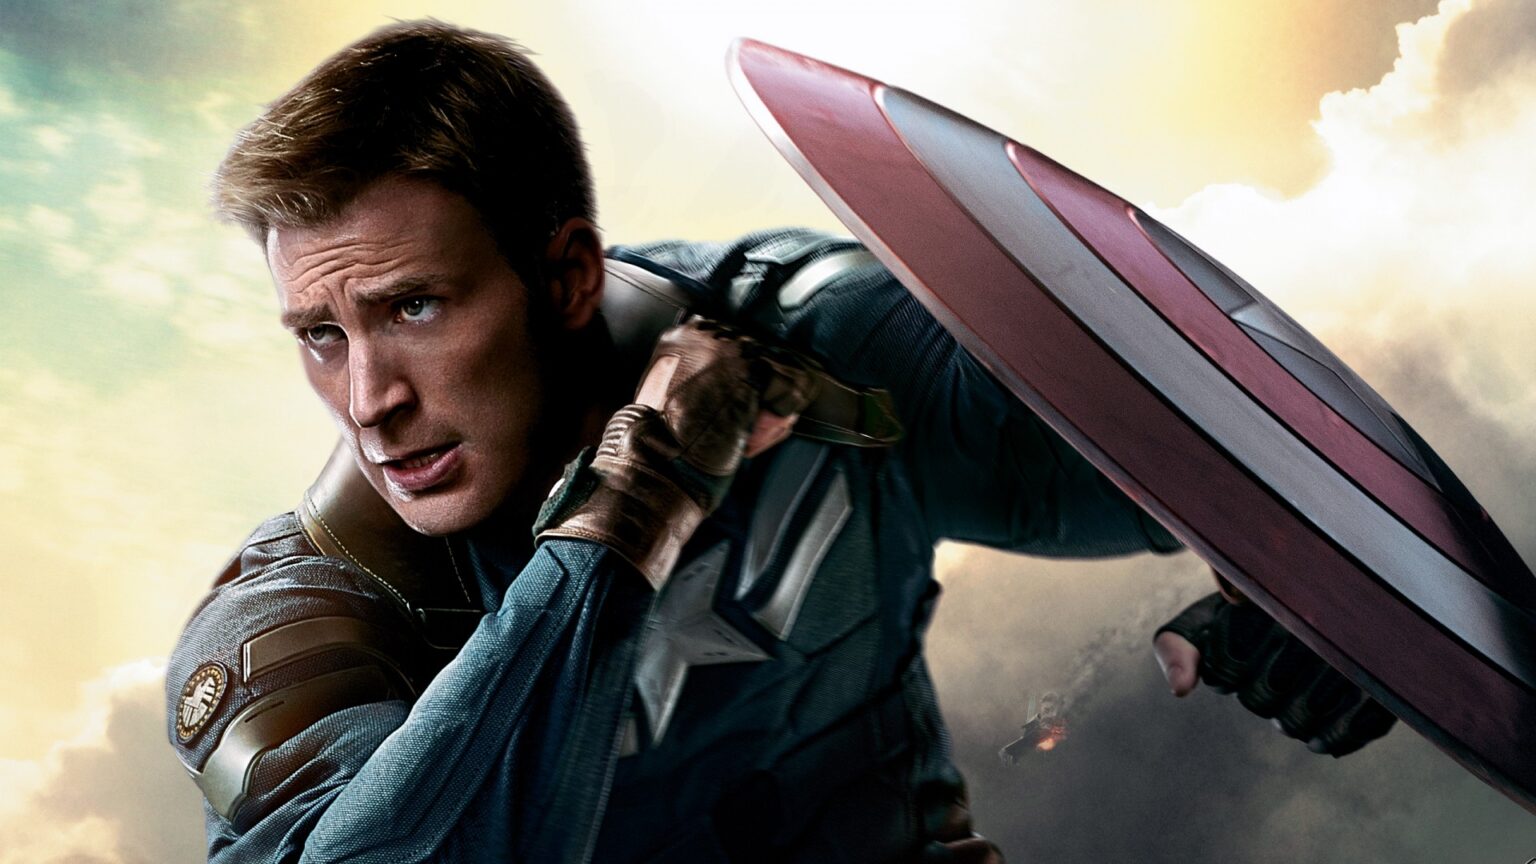 ¿Nuestro héroe favorito regrese a la pantalla grande? Checa todo lo que sabemos sobre el regreso de Chris Evans como el Capitán América.